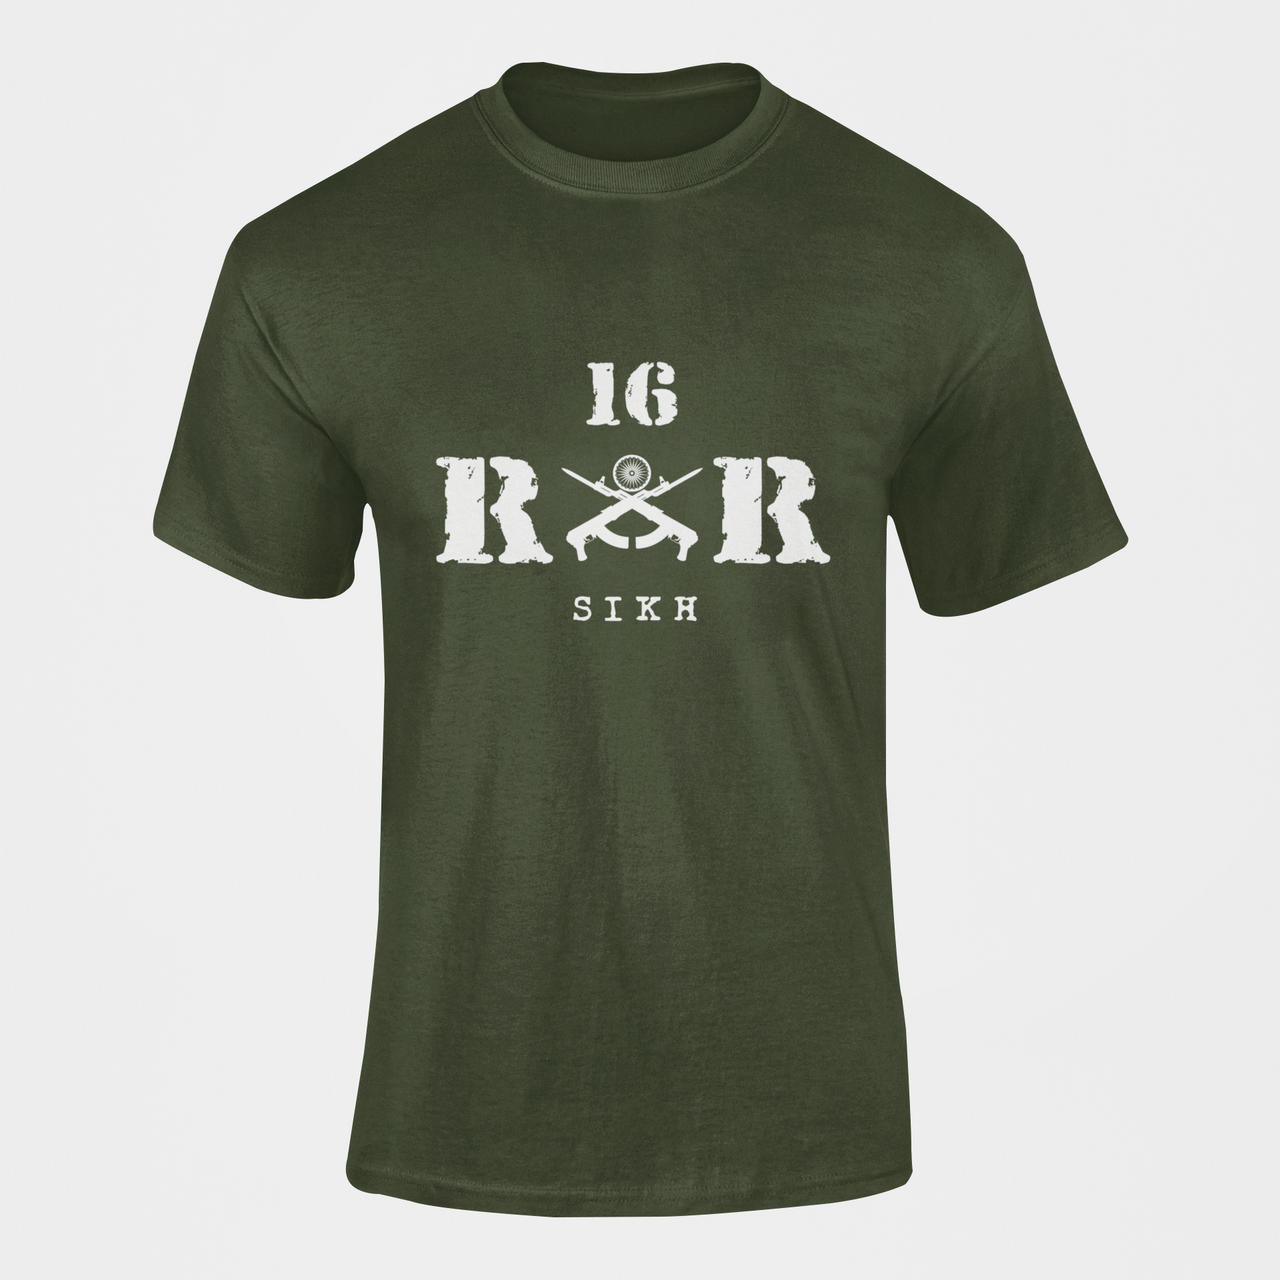 Rashtriya Rifles T-shirt - 16 RR Sikh (Men)